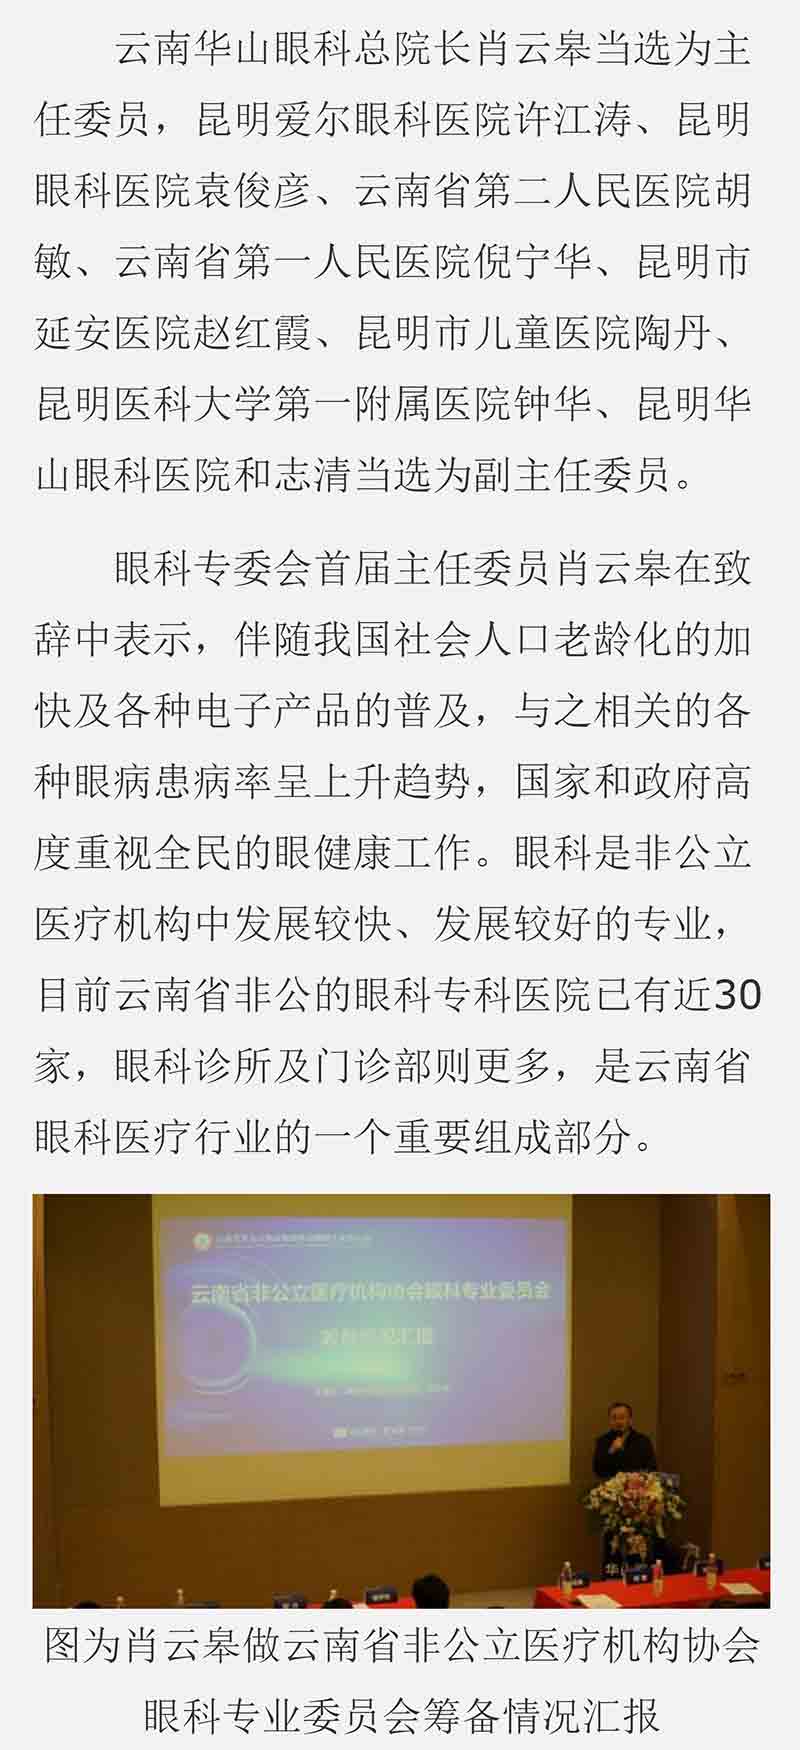 云南省非公立医疗机构协会眼科专业委员会首届选举会议在昆明召开---中新网_云南_04.jpg